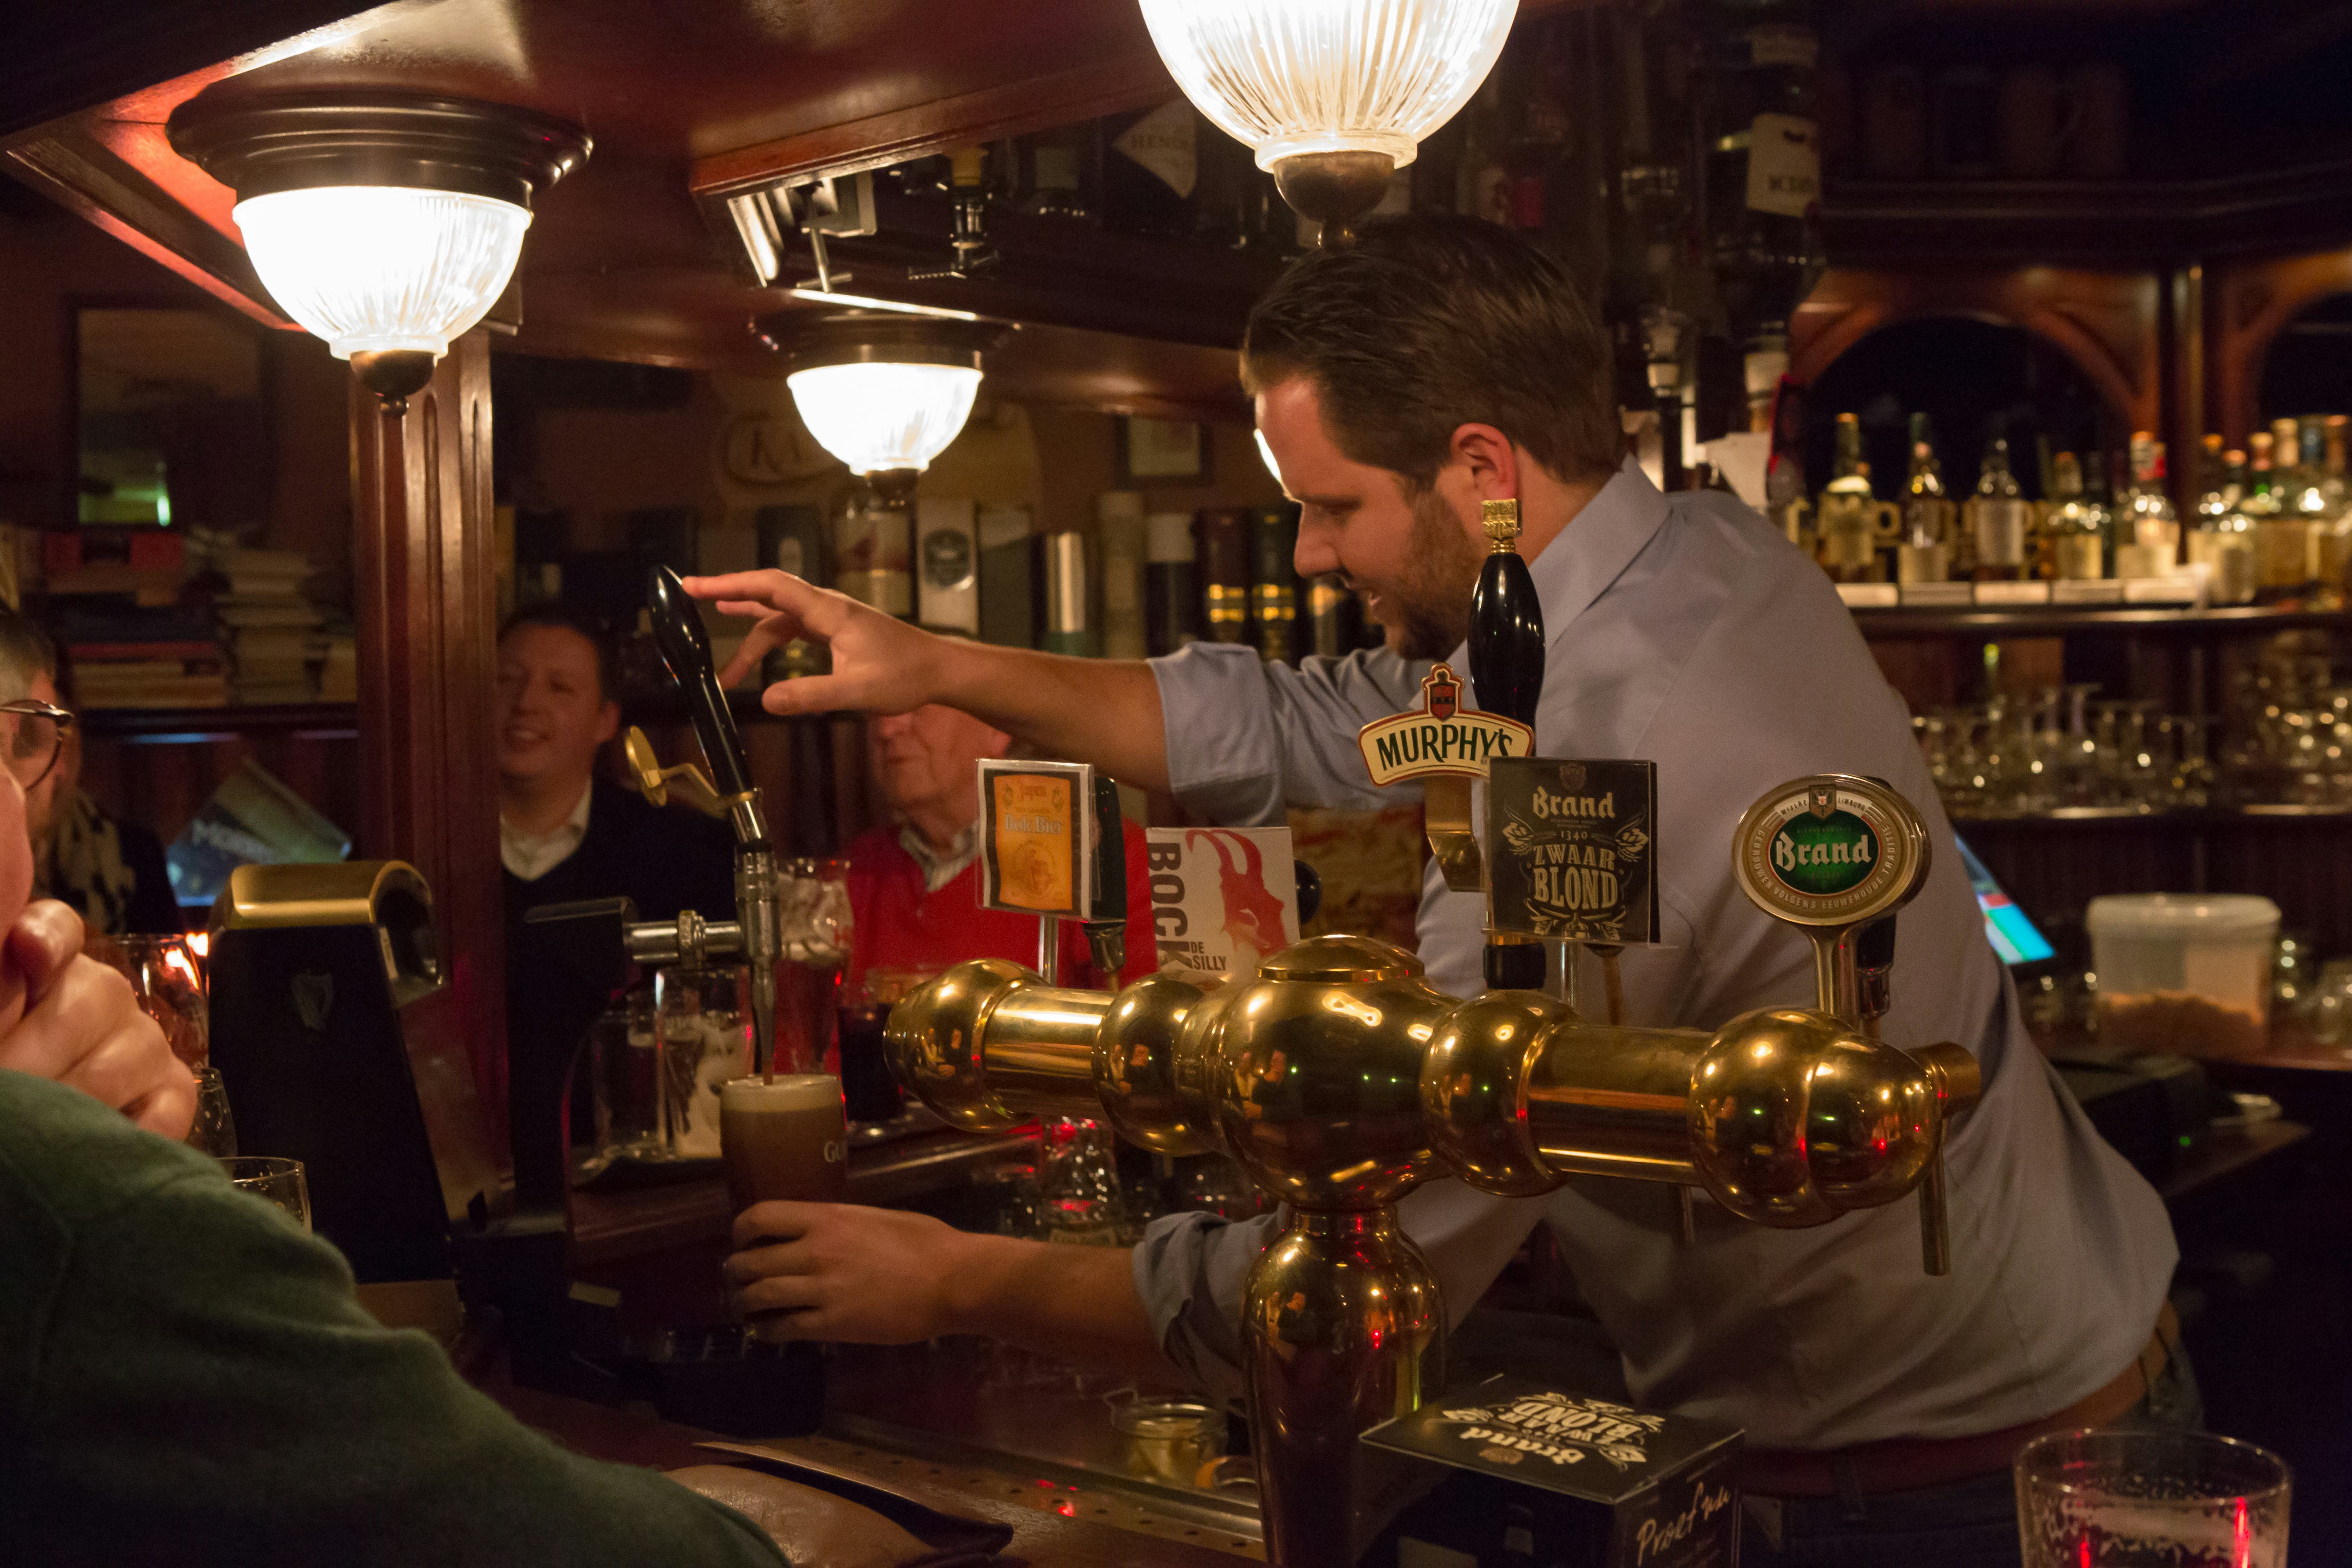 Engelsen keren terug naar pubs voor circa 8,5 miljoen liter bier